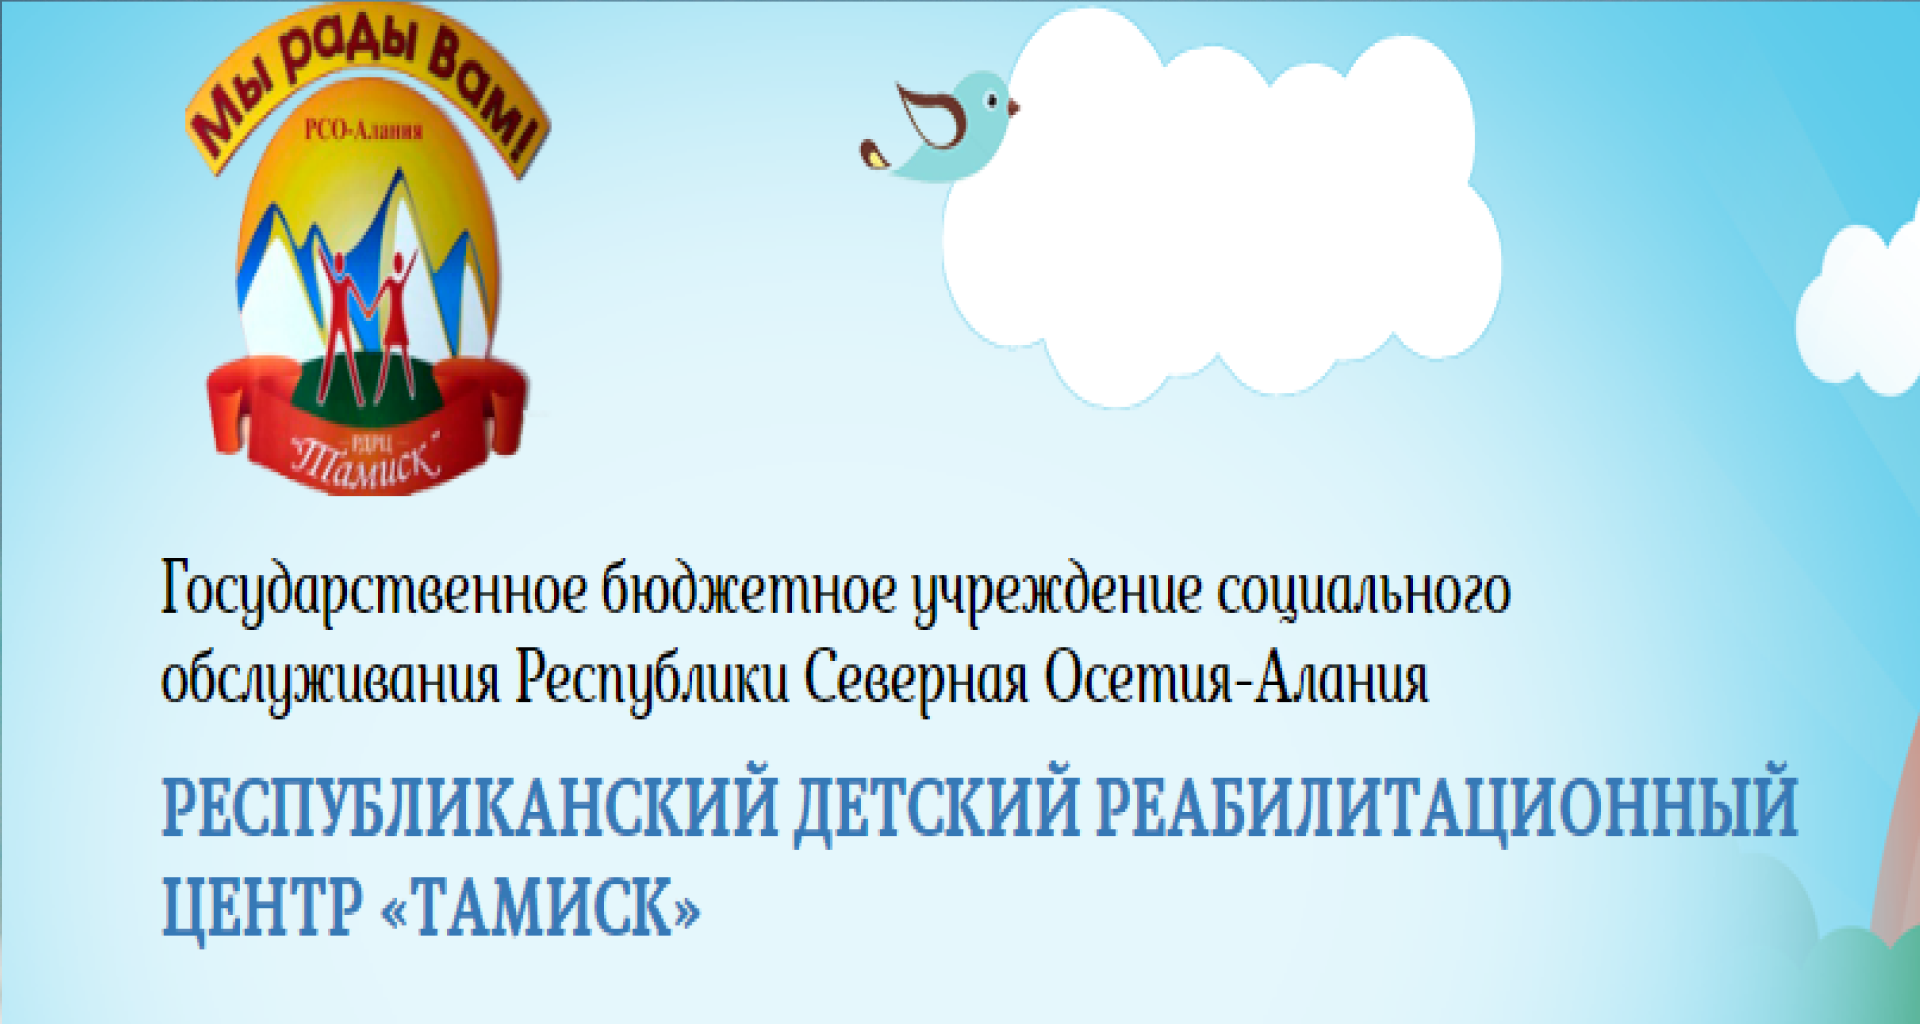 Благотворительная помощь направлена в Республиканский детский реабилитационный Центр «Тамиск» Республики Северная Осетия-Алания